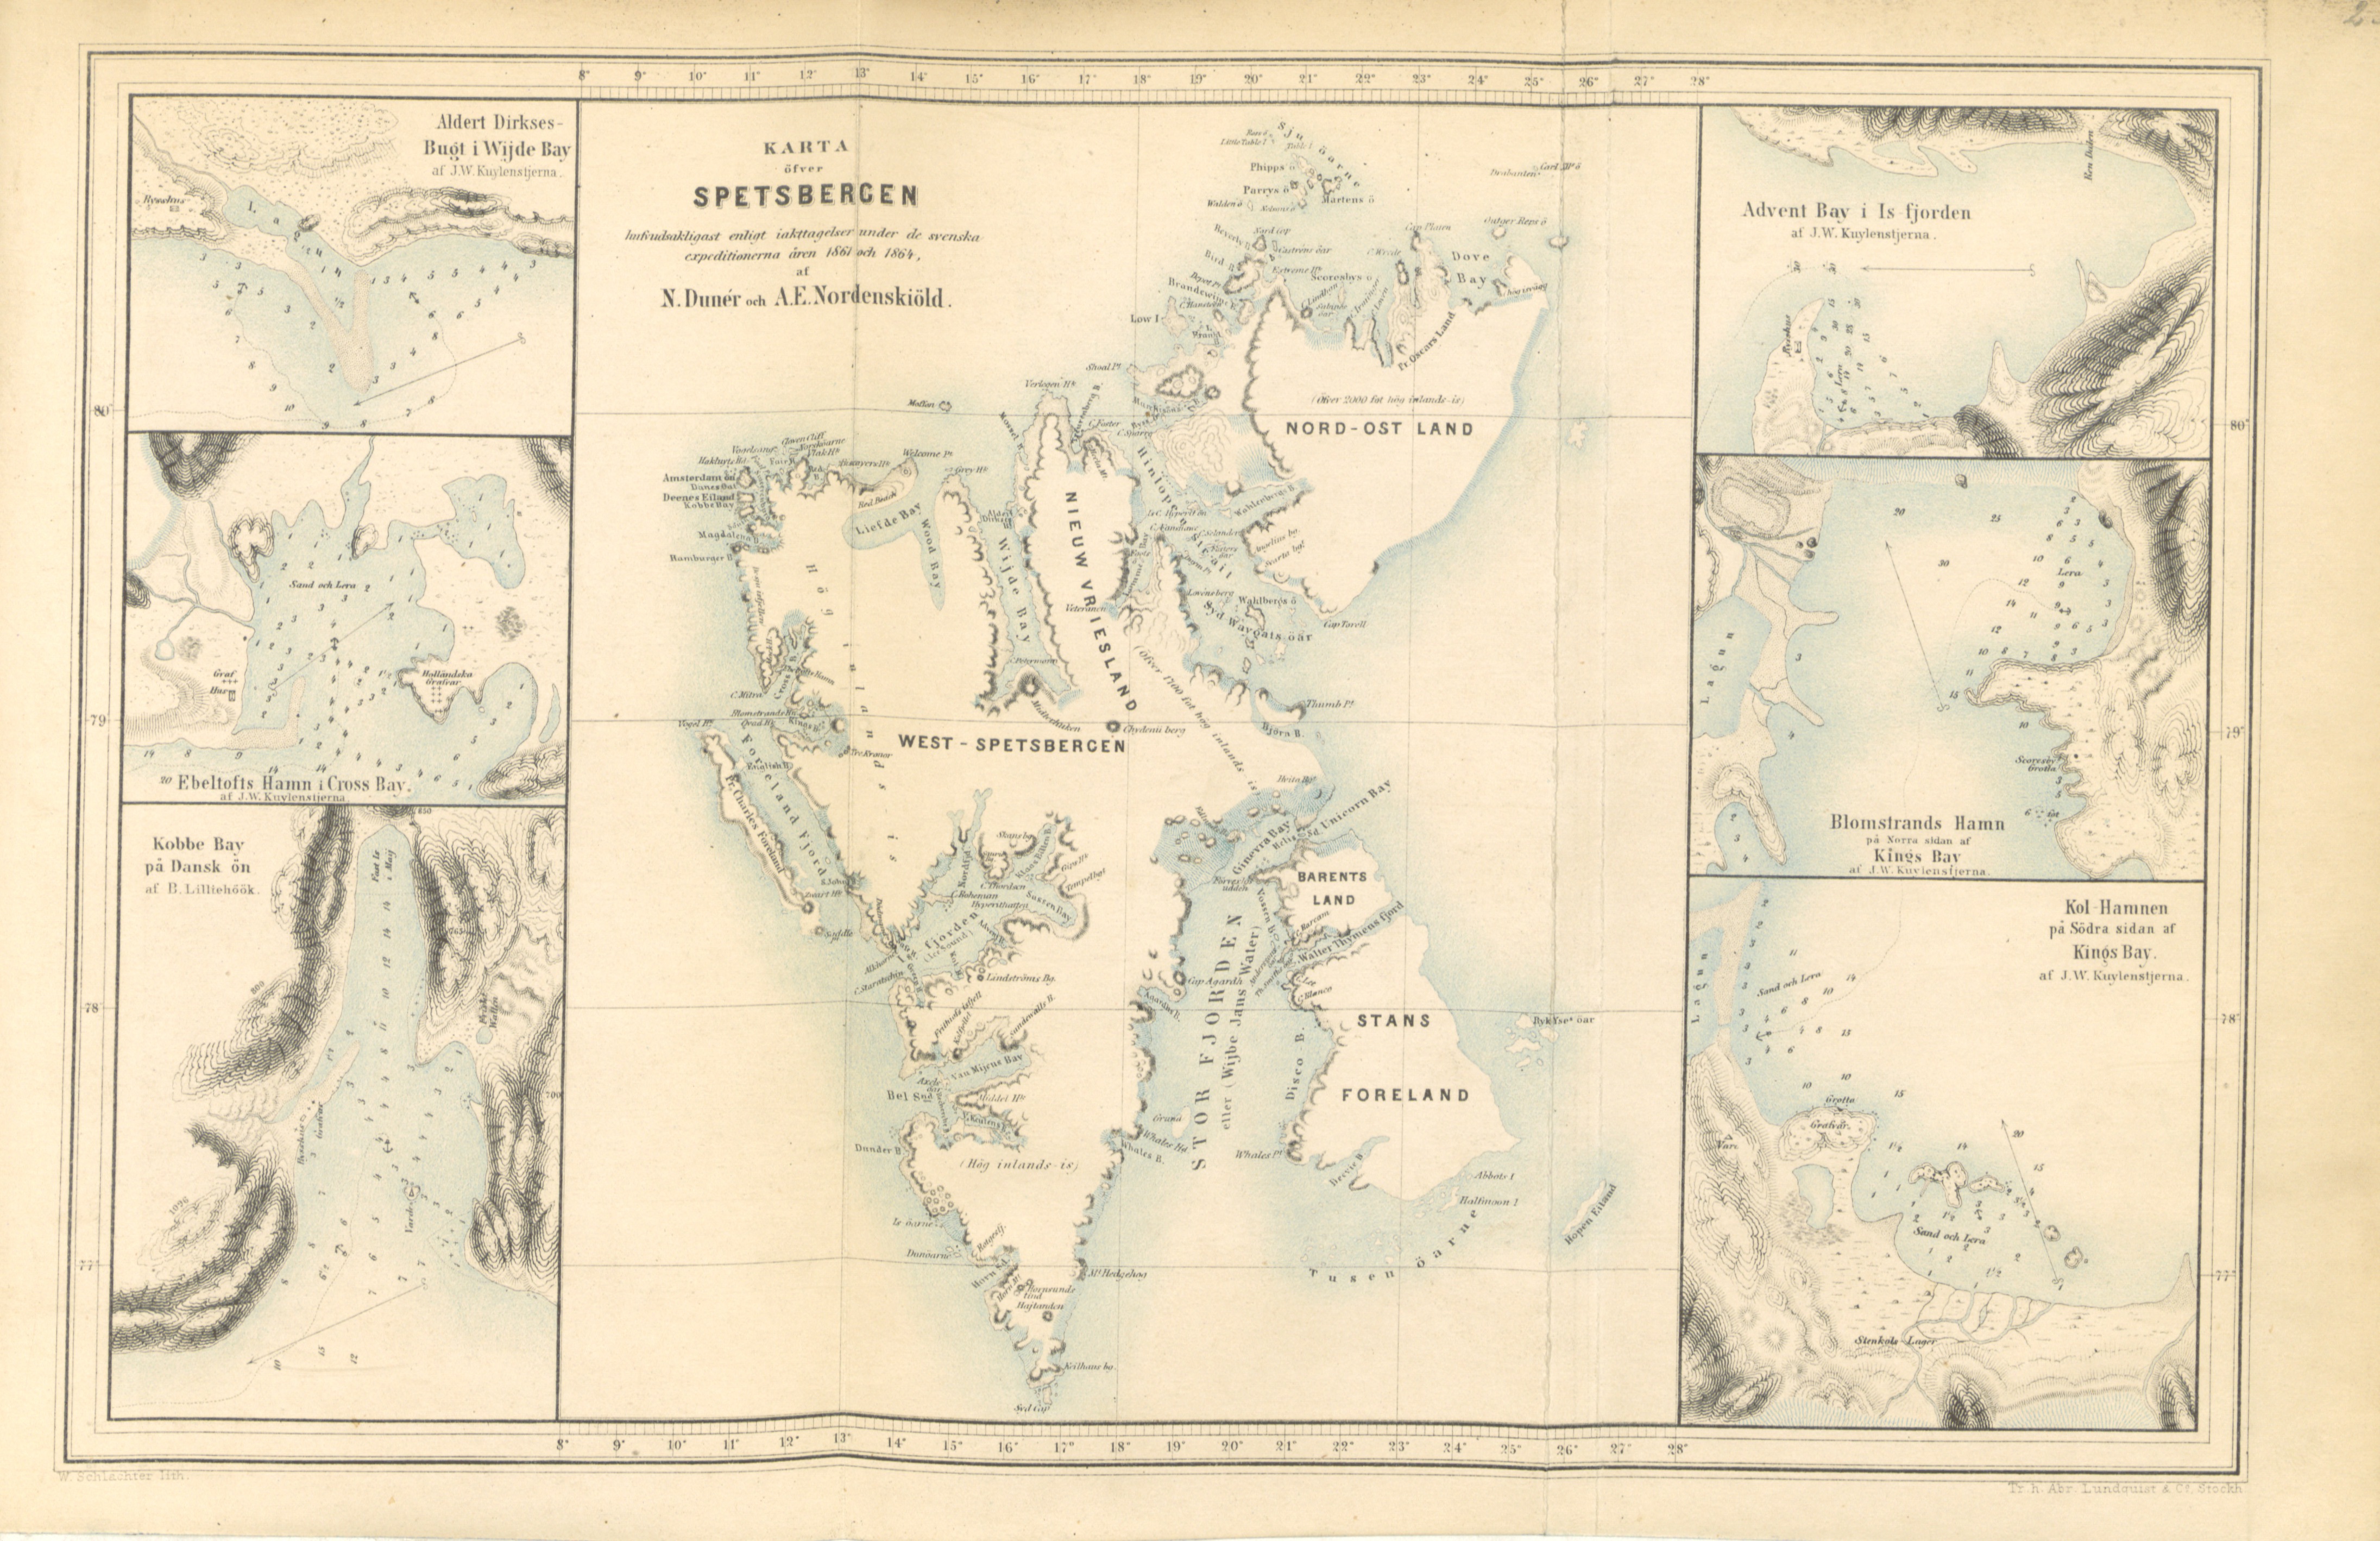 Svenska expeditionen till Spetsbergen - Karte over Spetsbergen (1865)